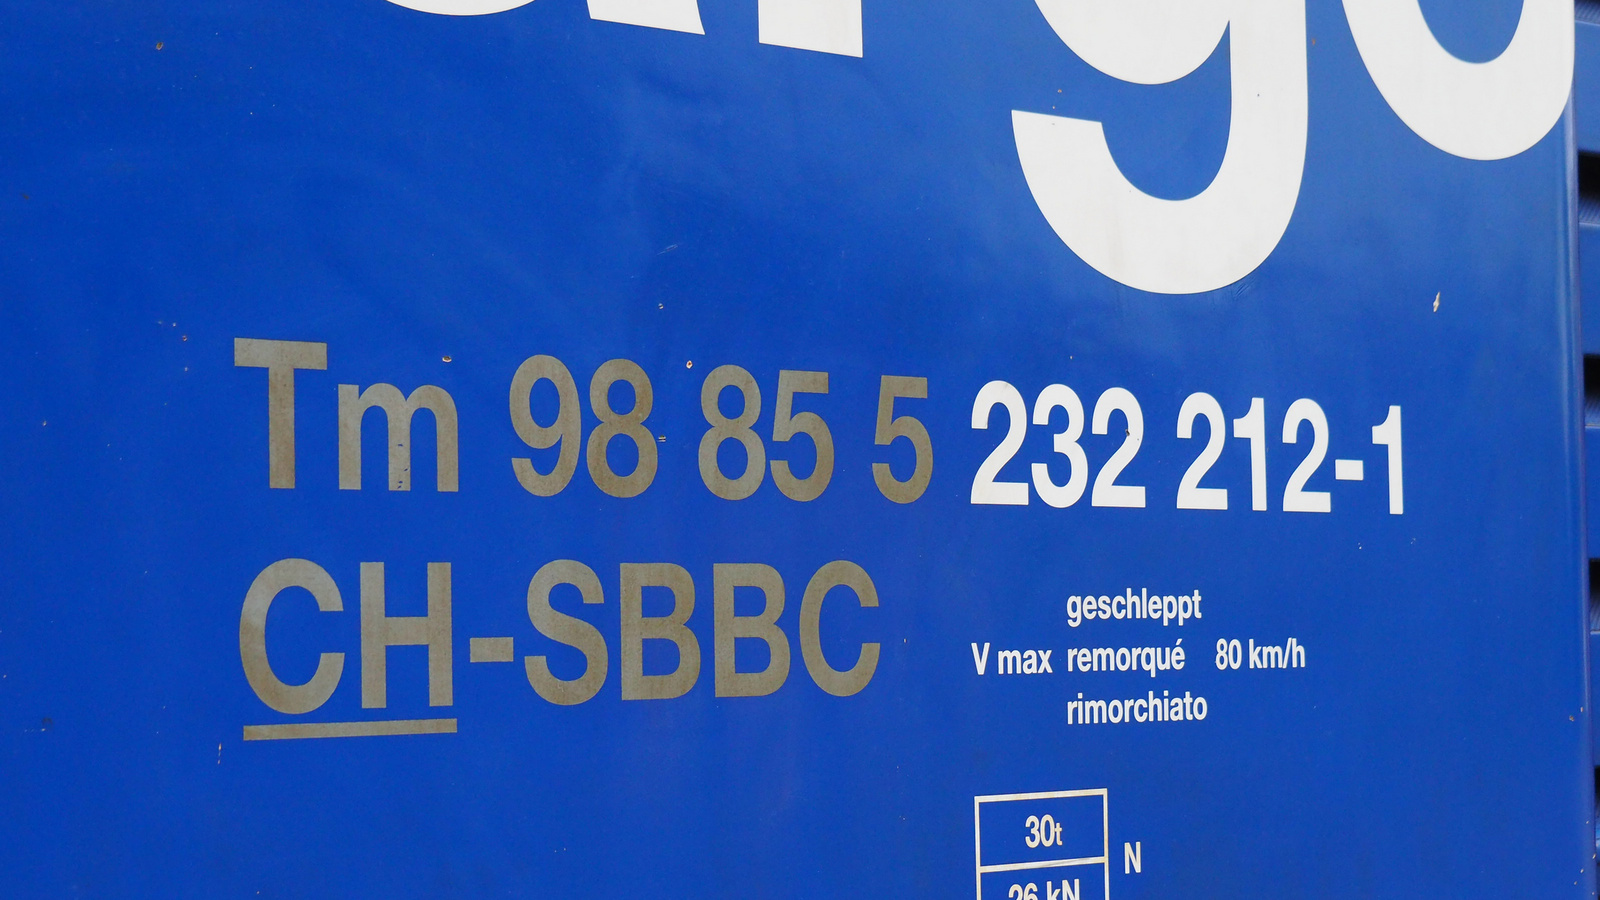 CH-SBBC 98 85 5 232 212-1, SzG3